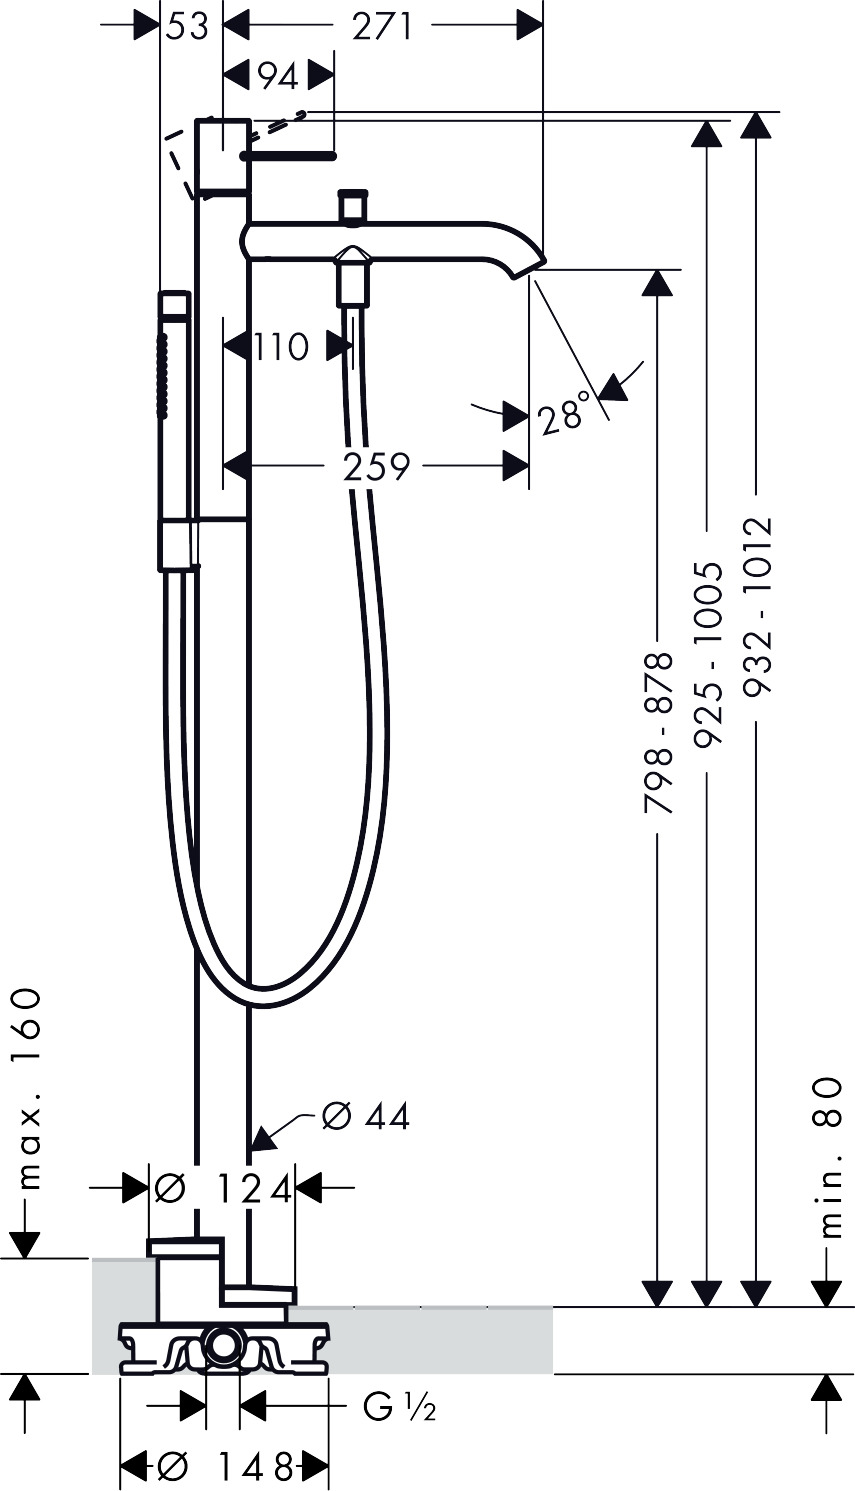 38442000 AXOR Uno Floor standing single lever bath mixer loop handle